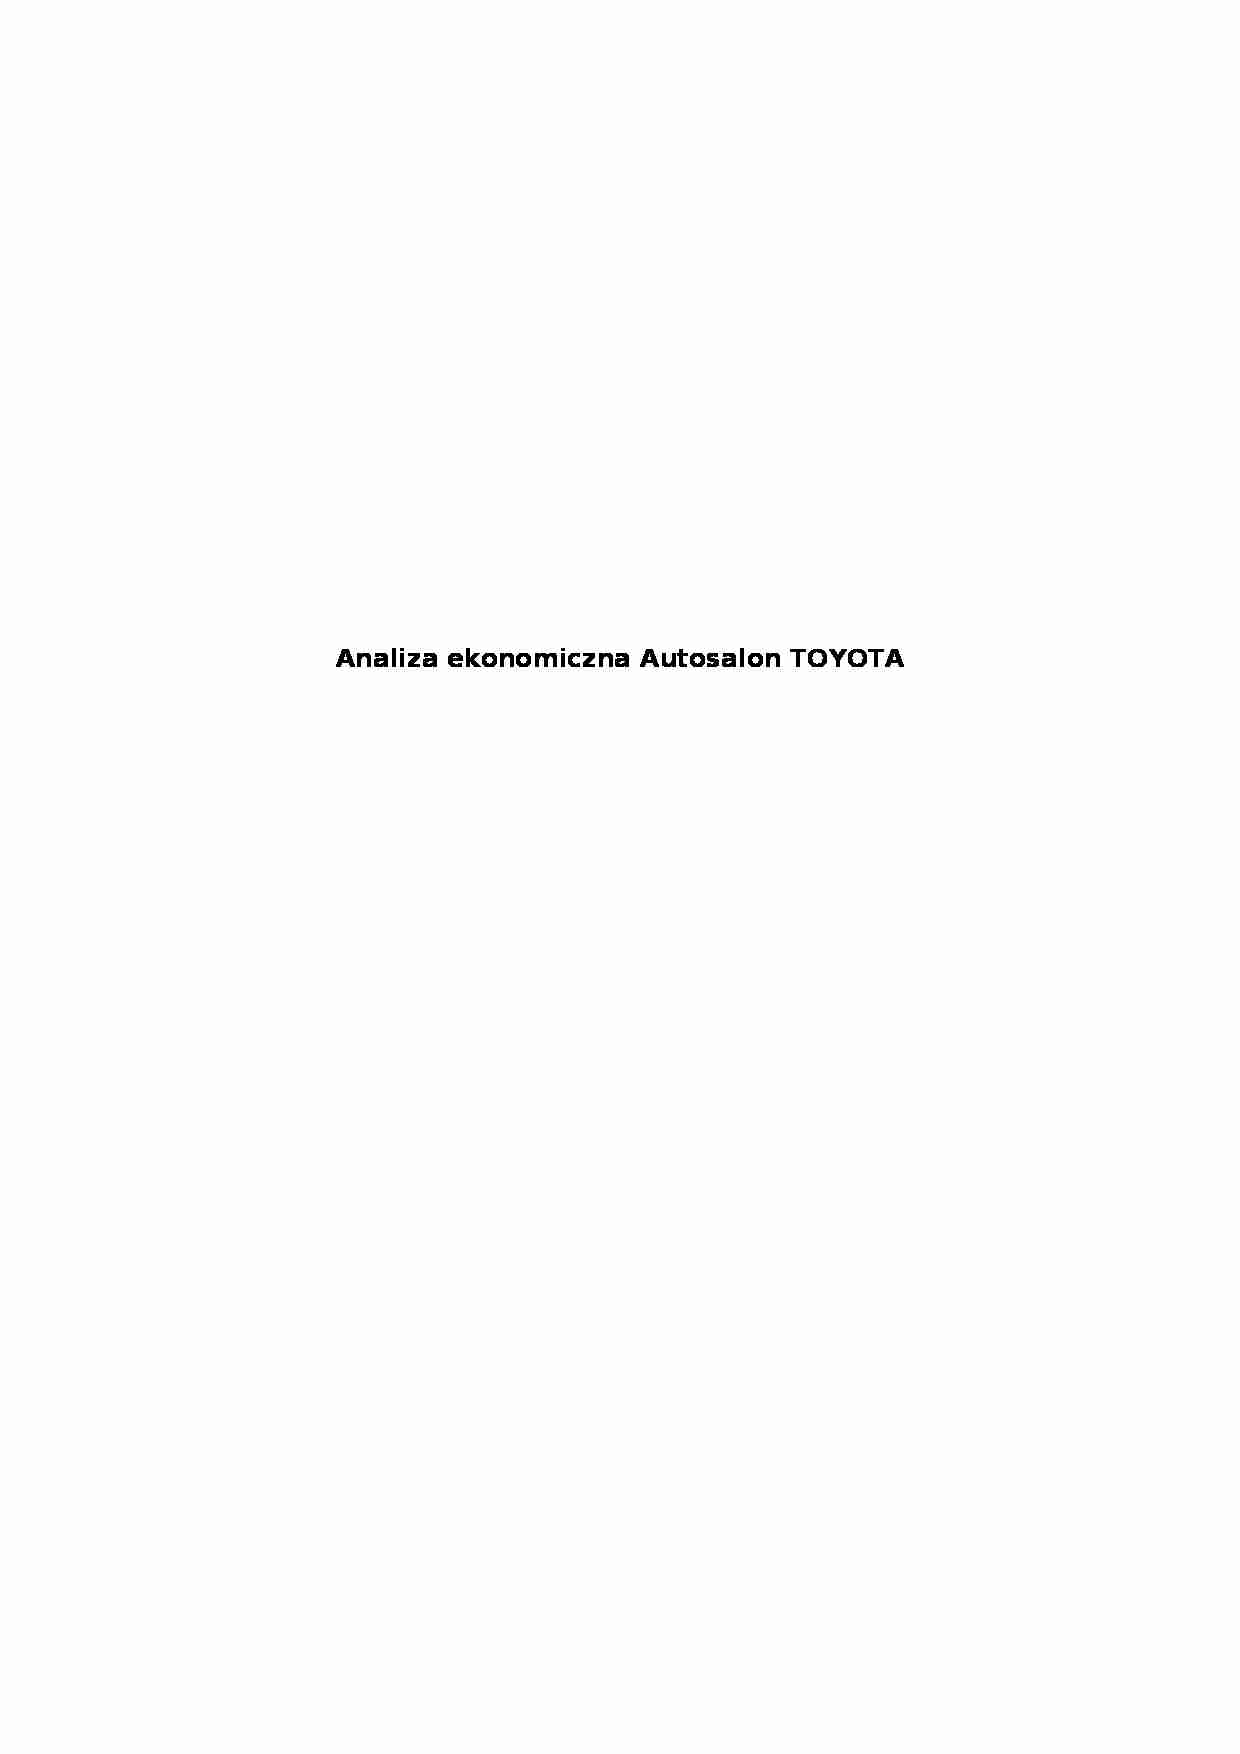 Analiza ekonomiczna - Autosalon TOYOTA - strona 1